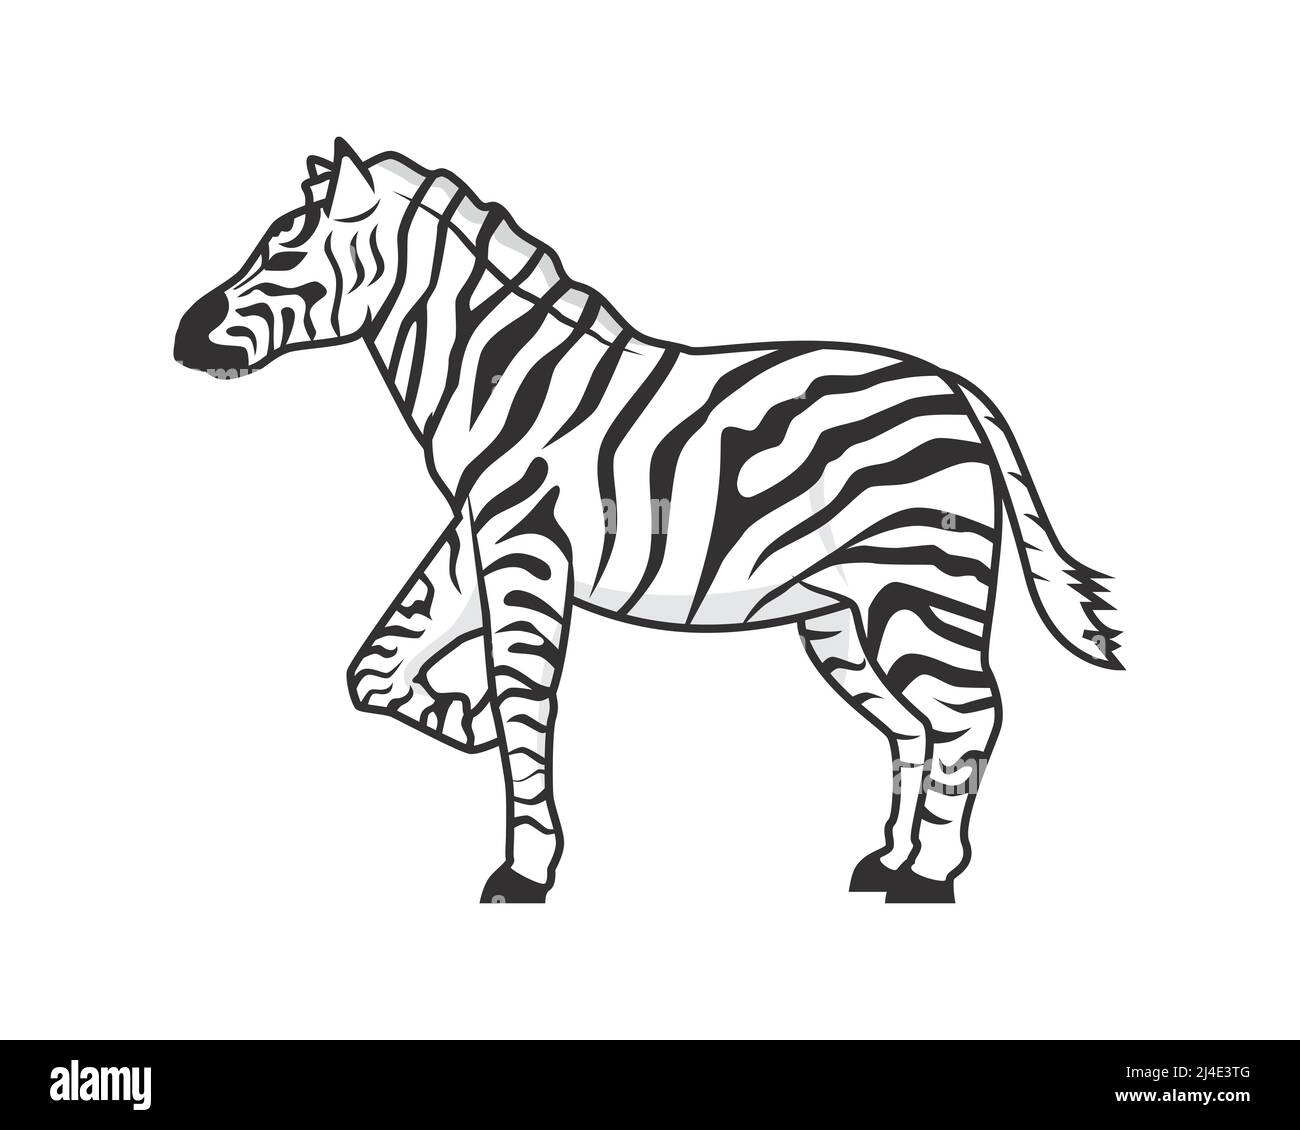 Detailed Standing Zebra Horse Illustration Vector Stock Vector